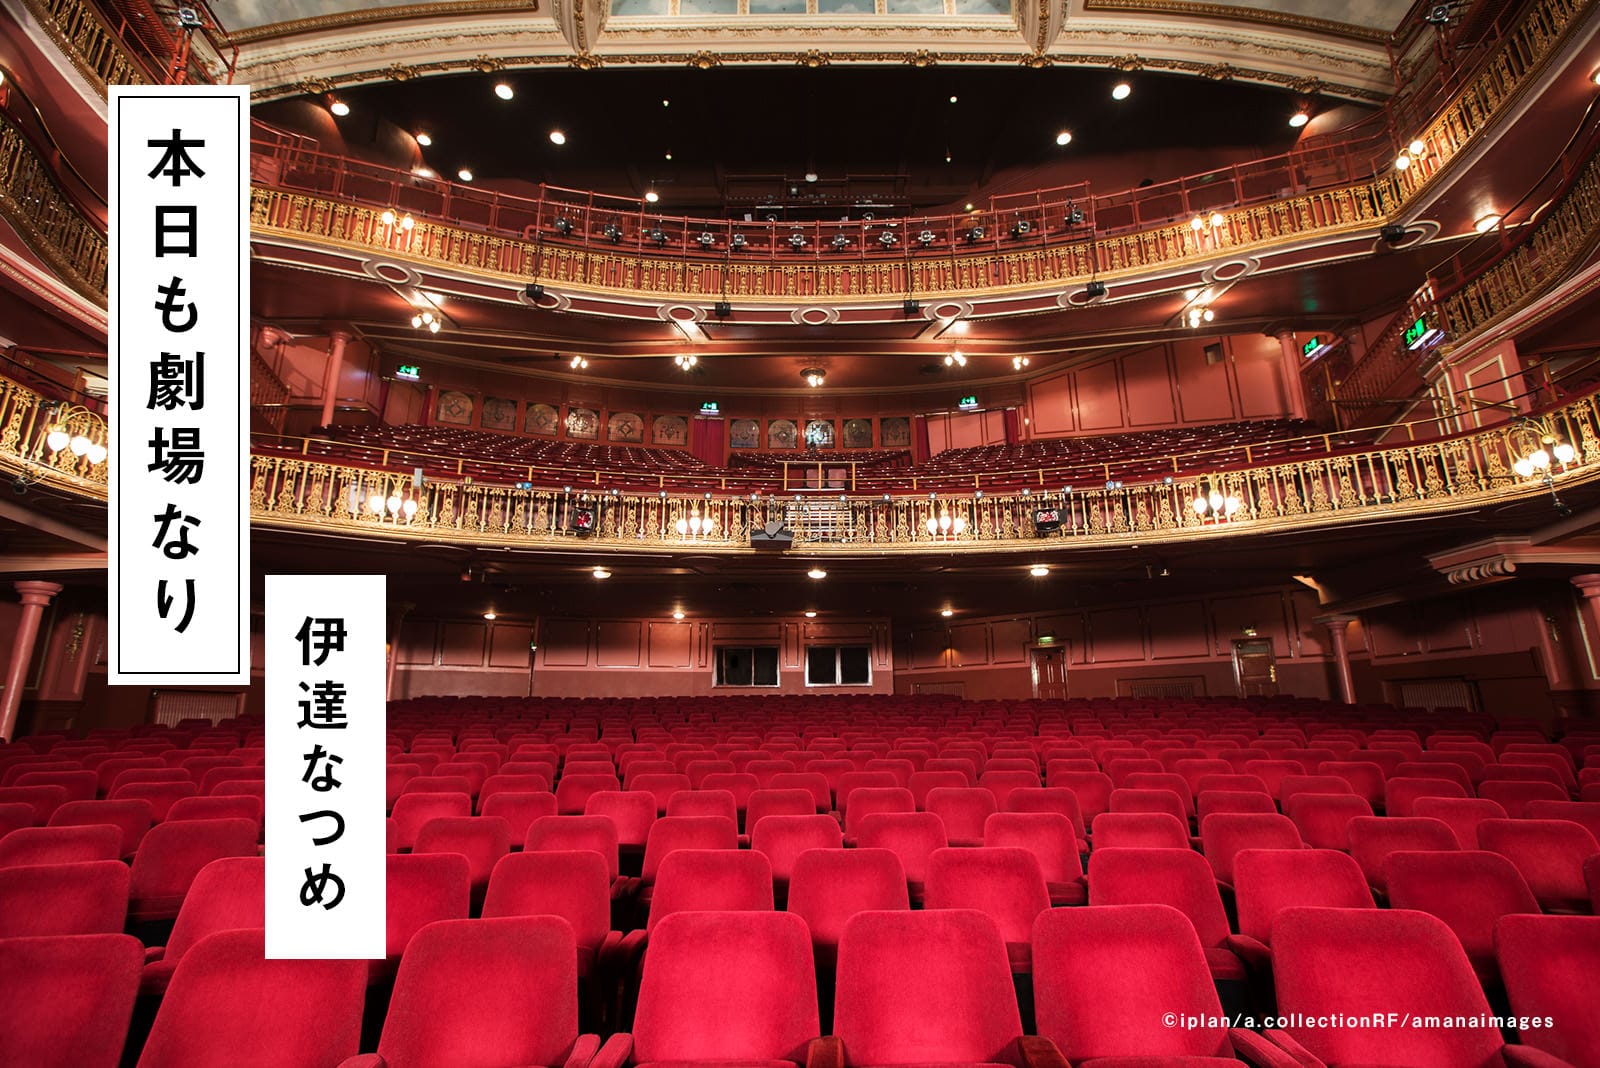 #42 舞台芸術の理想型――音楽・美術・演劇・映像・身体表現が融合 したオペラ